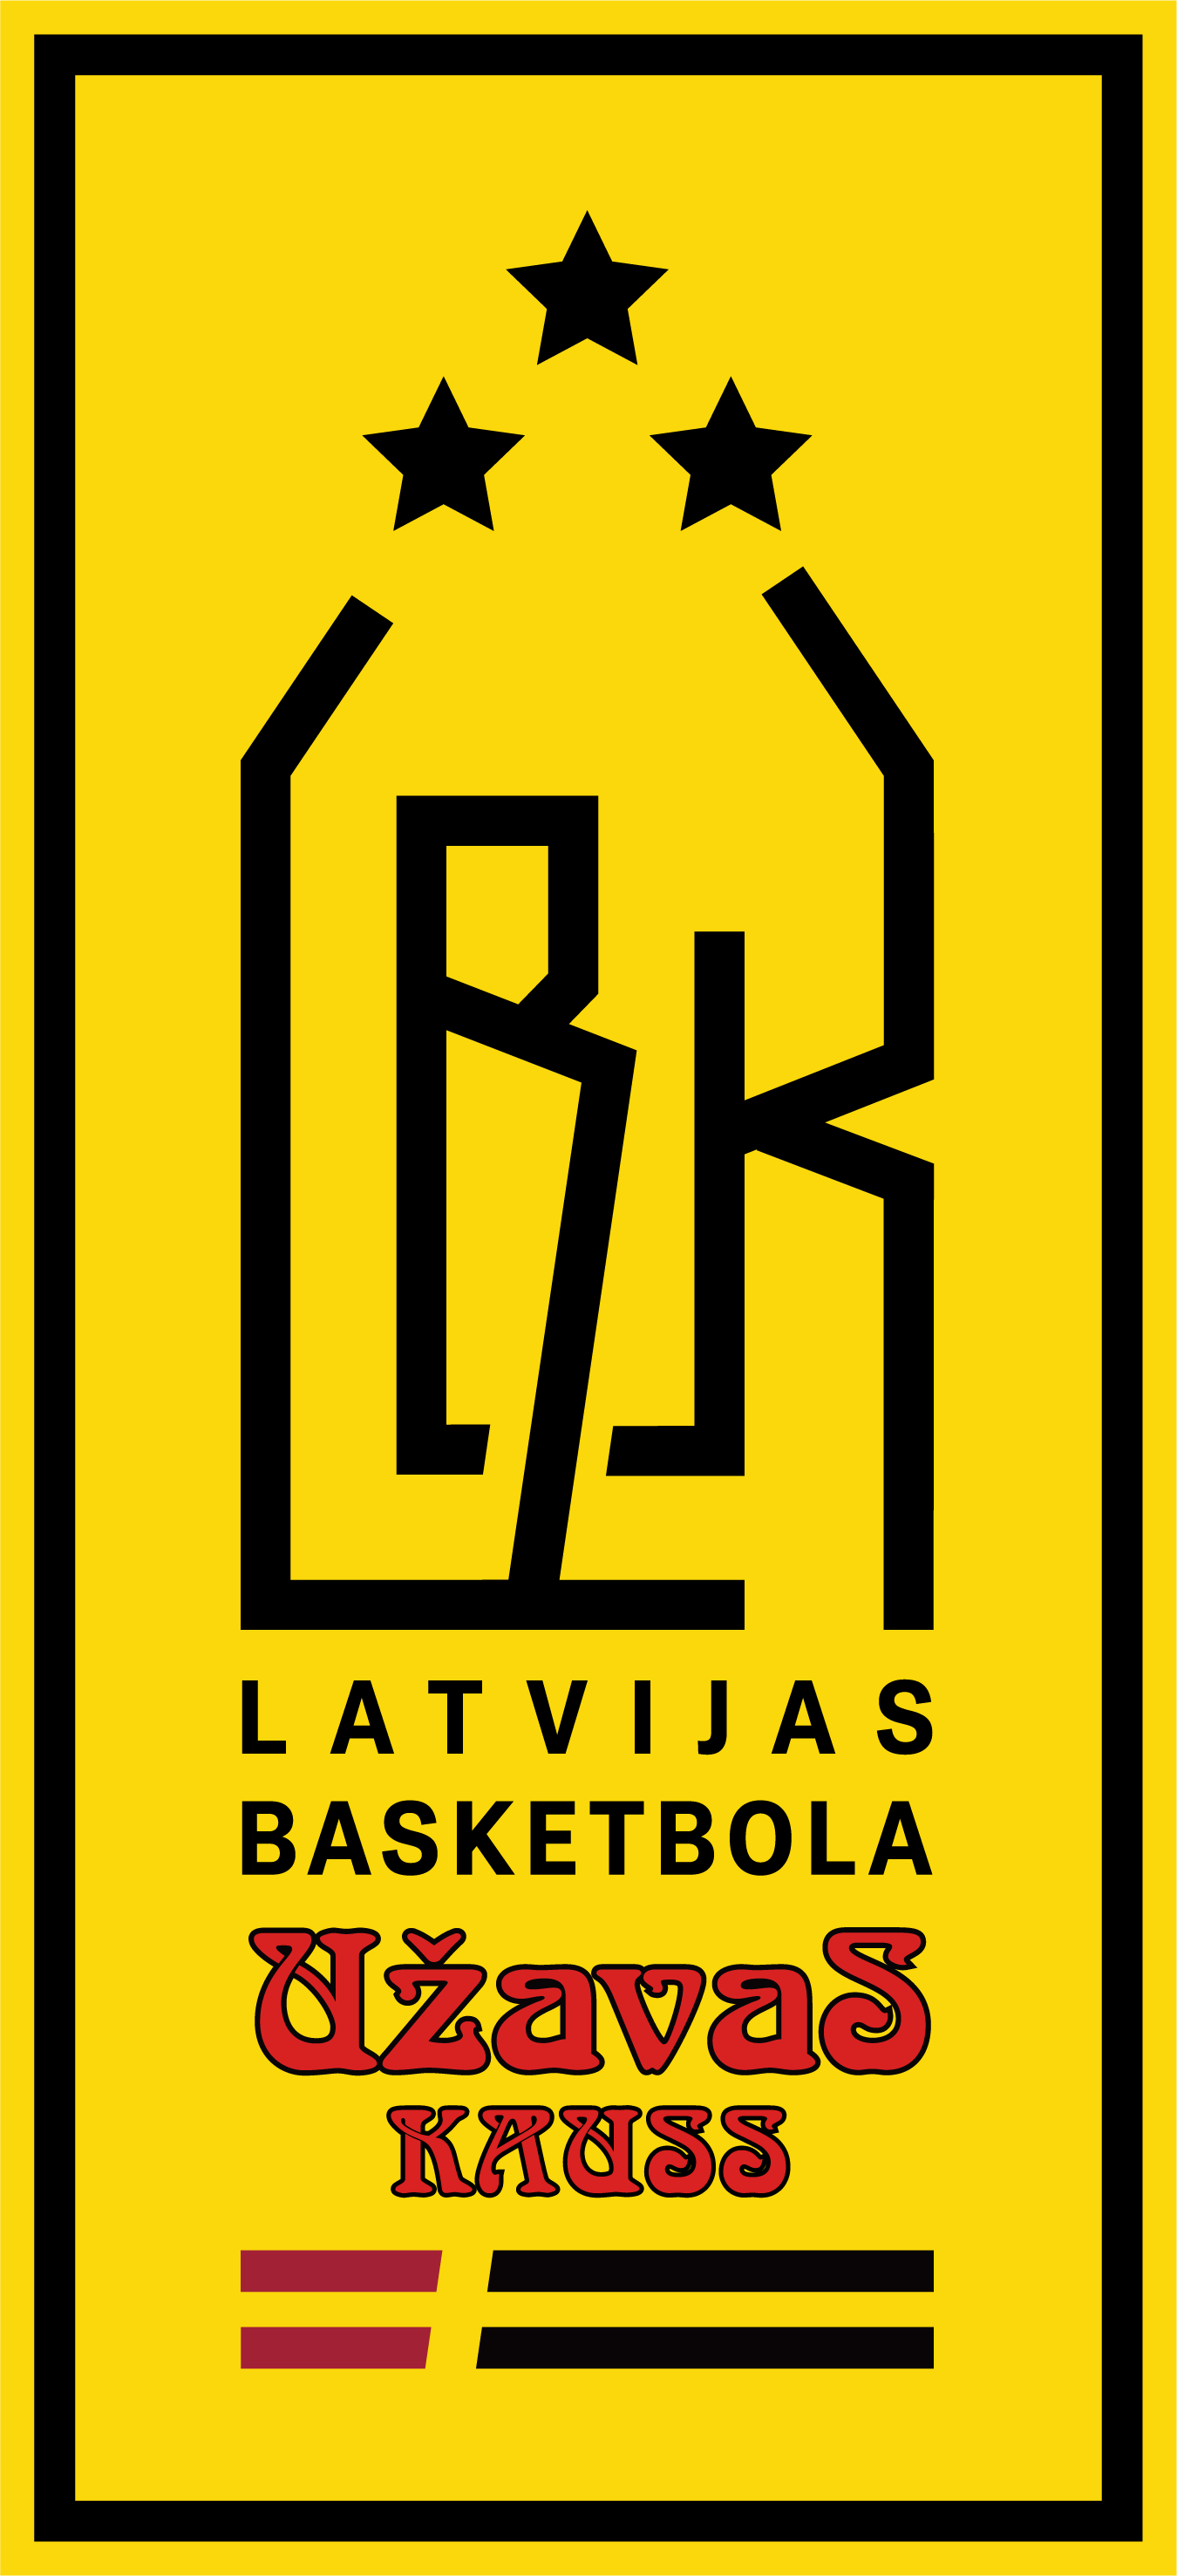 Latvijas basketbola Užavas kauss